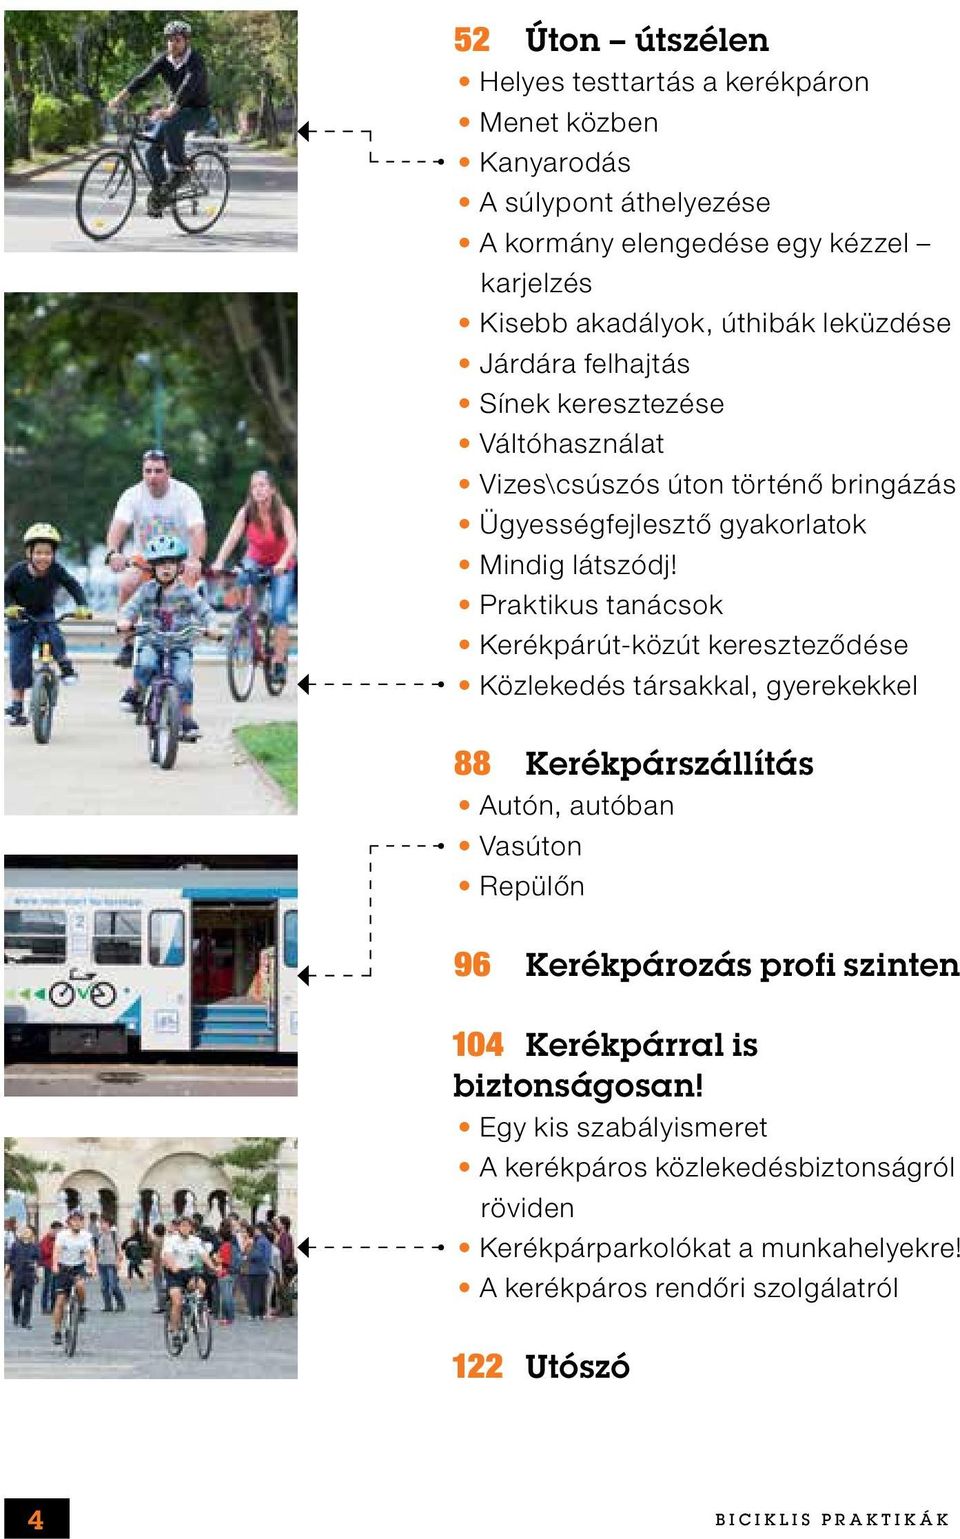 A gyakorlati kerékpár használata prosztatitisekkel)